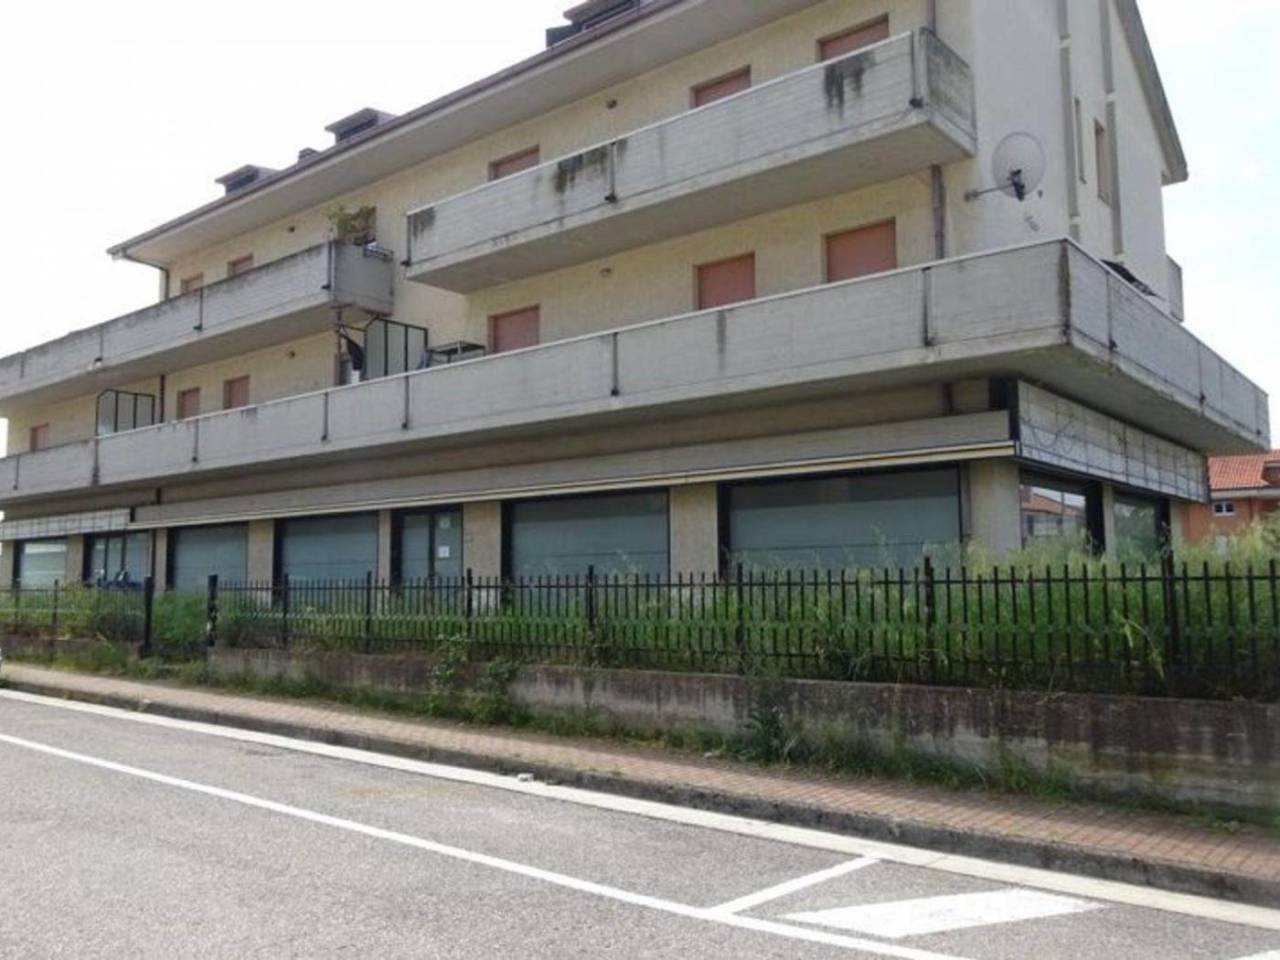 Negozio / Locale in vendita a Colli del Tronto, 5 locali, prezzo € 840.000 | PortaleAgenzieImmobiliari.it